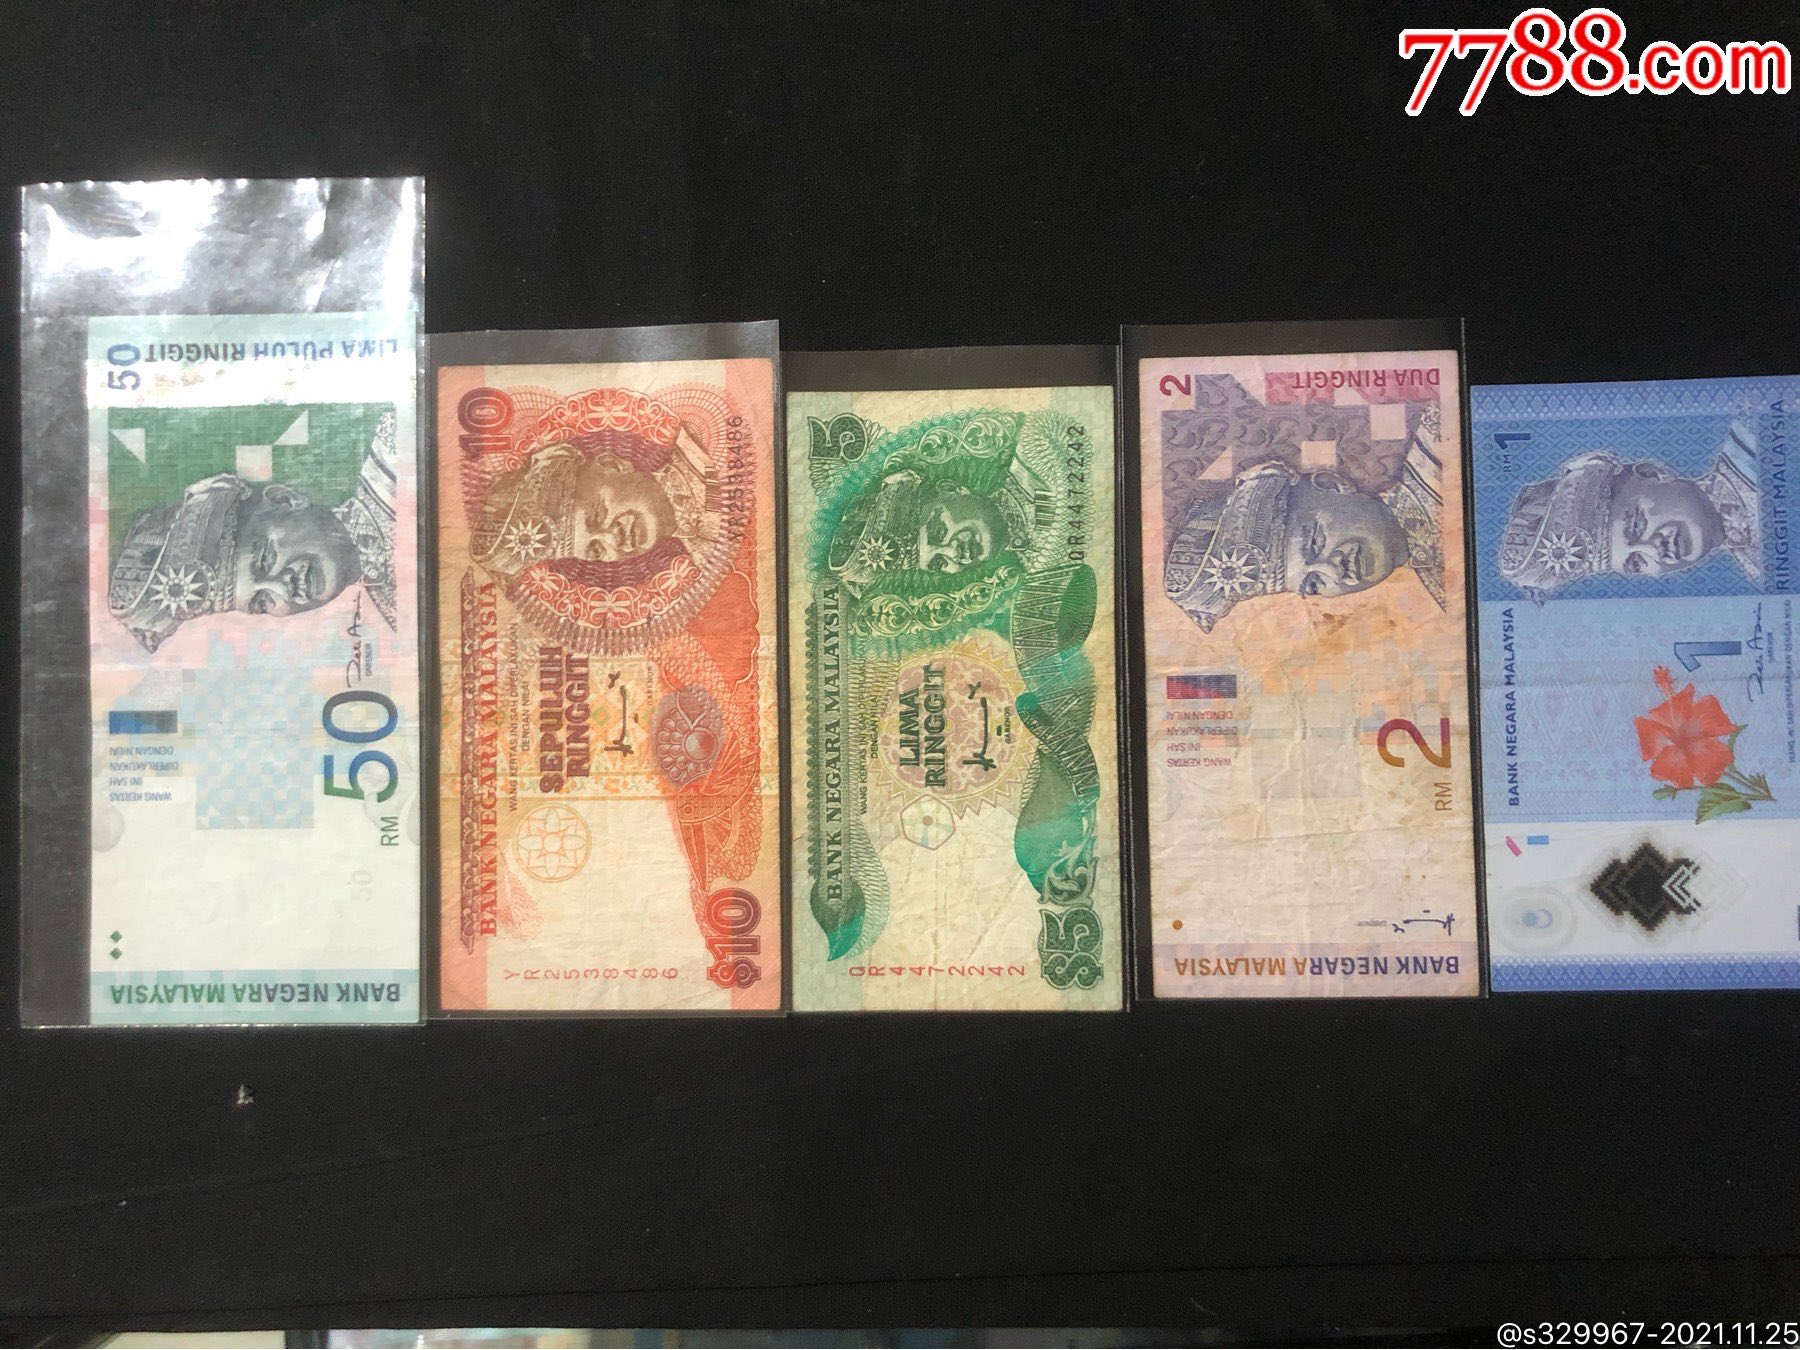 人民币马来西亚林吉特图片